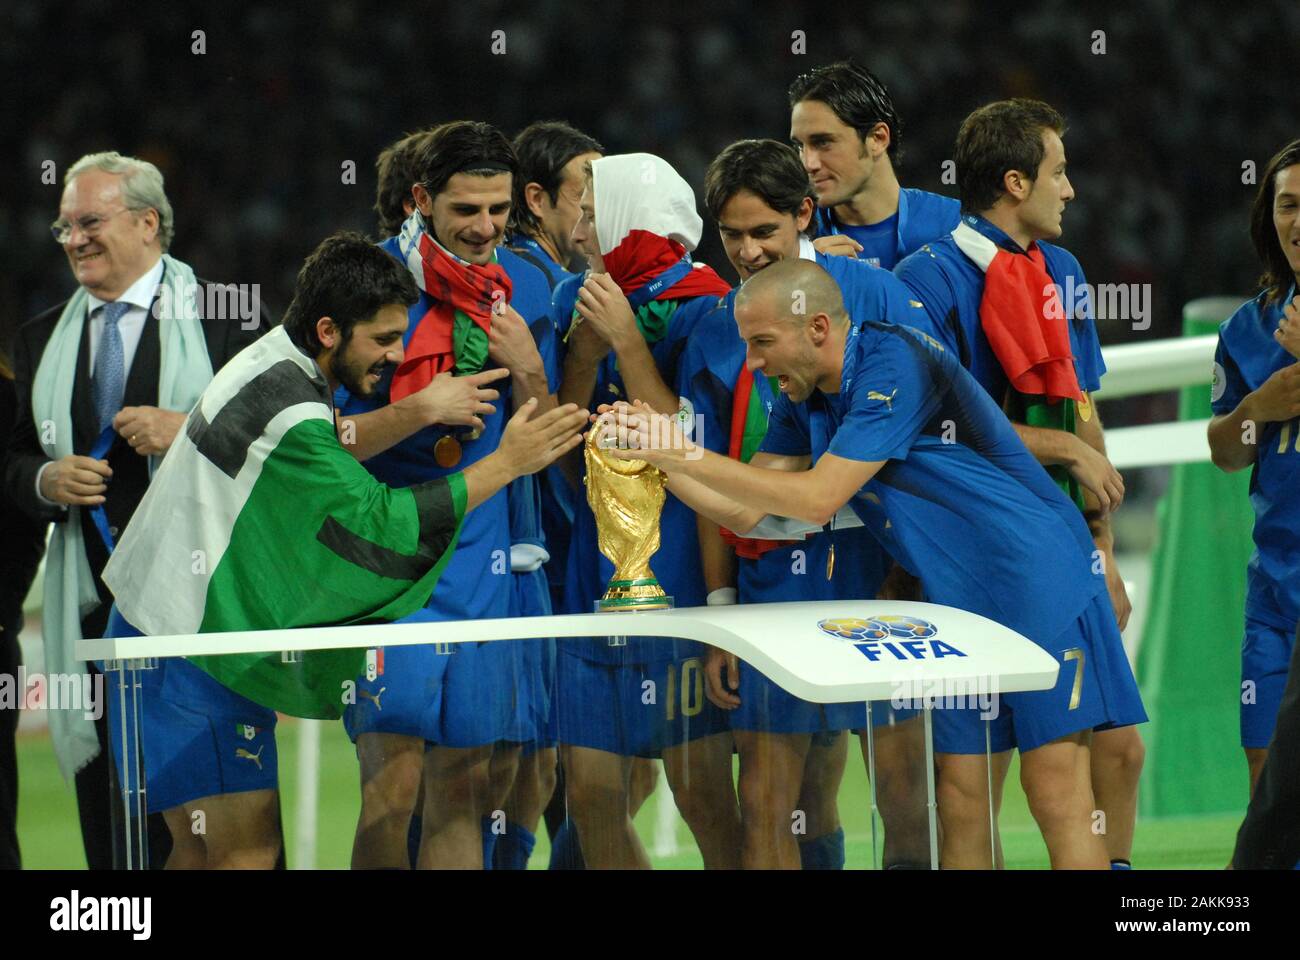 Itália 1-1 França - FINAL Mundial 2006 - Melhores Momentos ○ JOGOS  HISTÓRICOS 